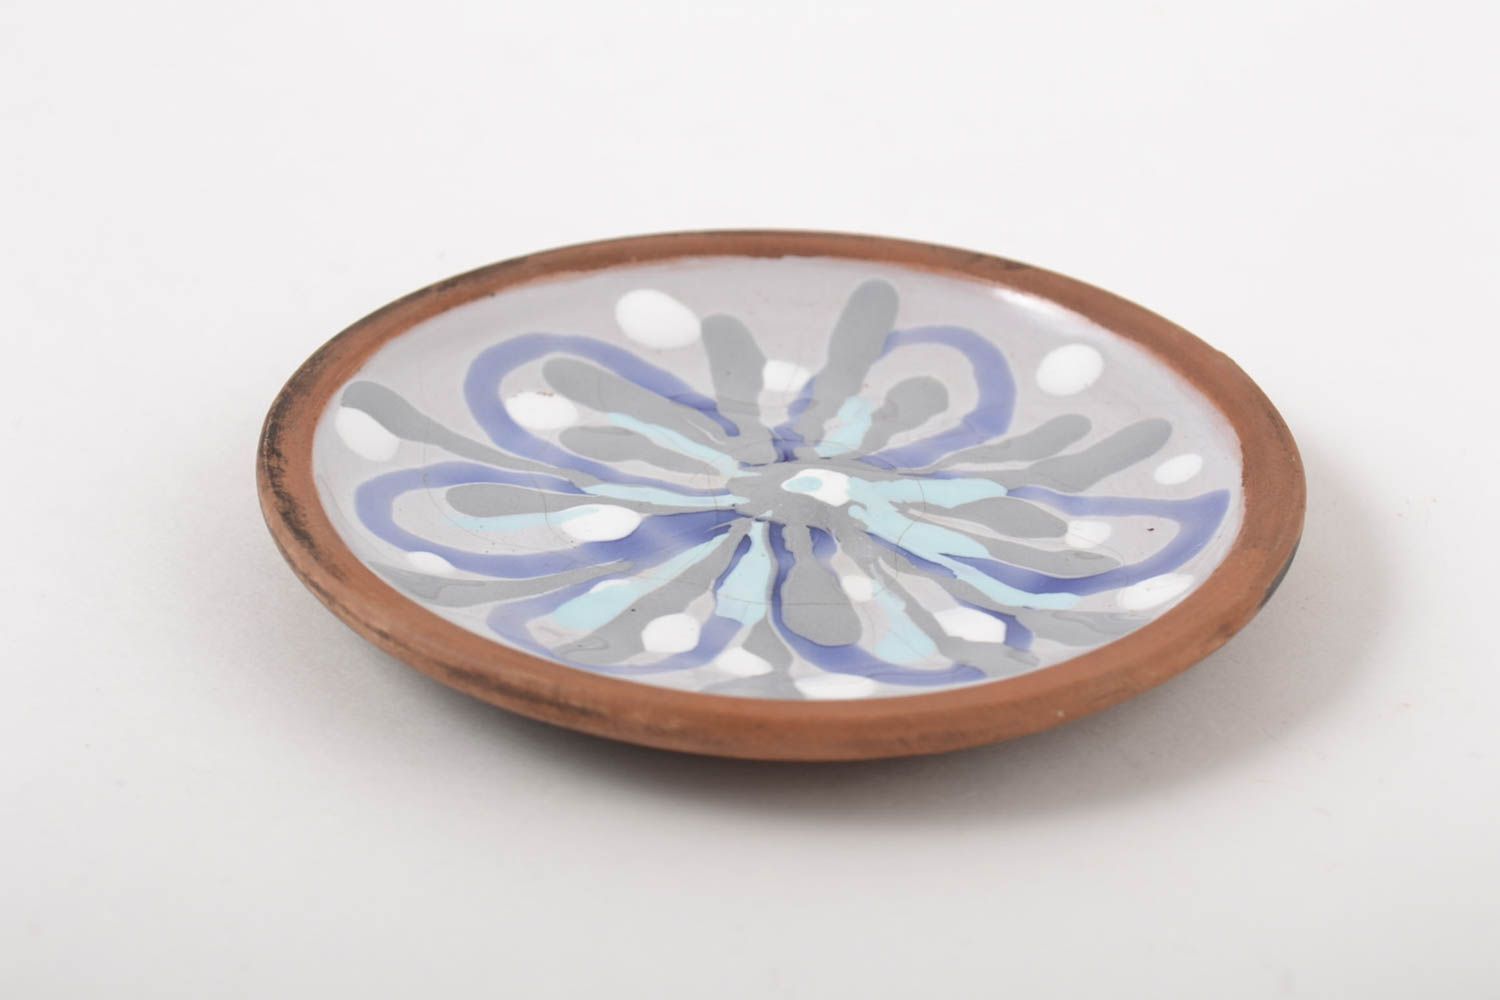 Plato de cerámica hecho a mano decorado utensilio de cocina vajilla moderna foto 2